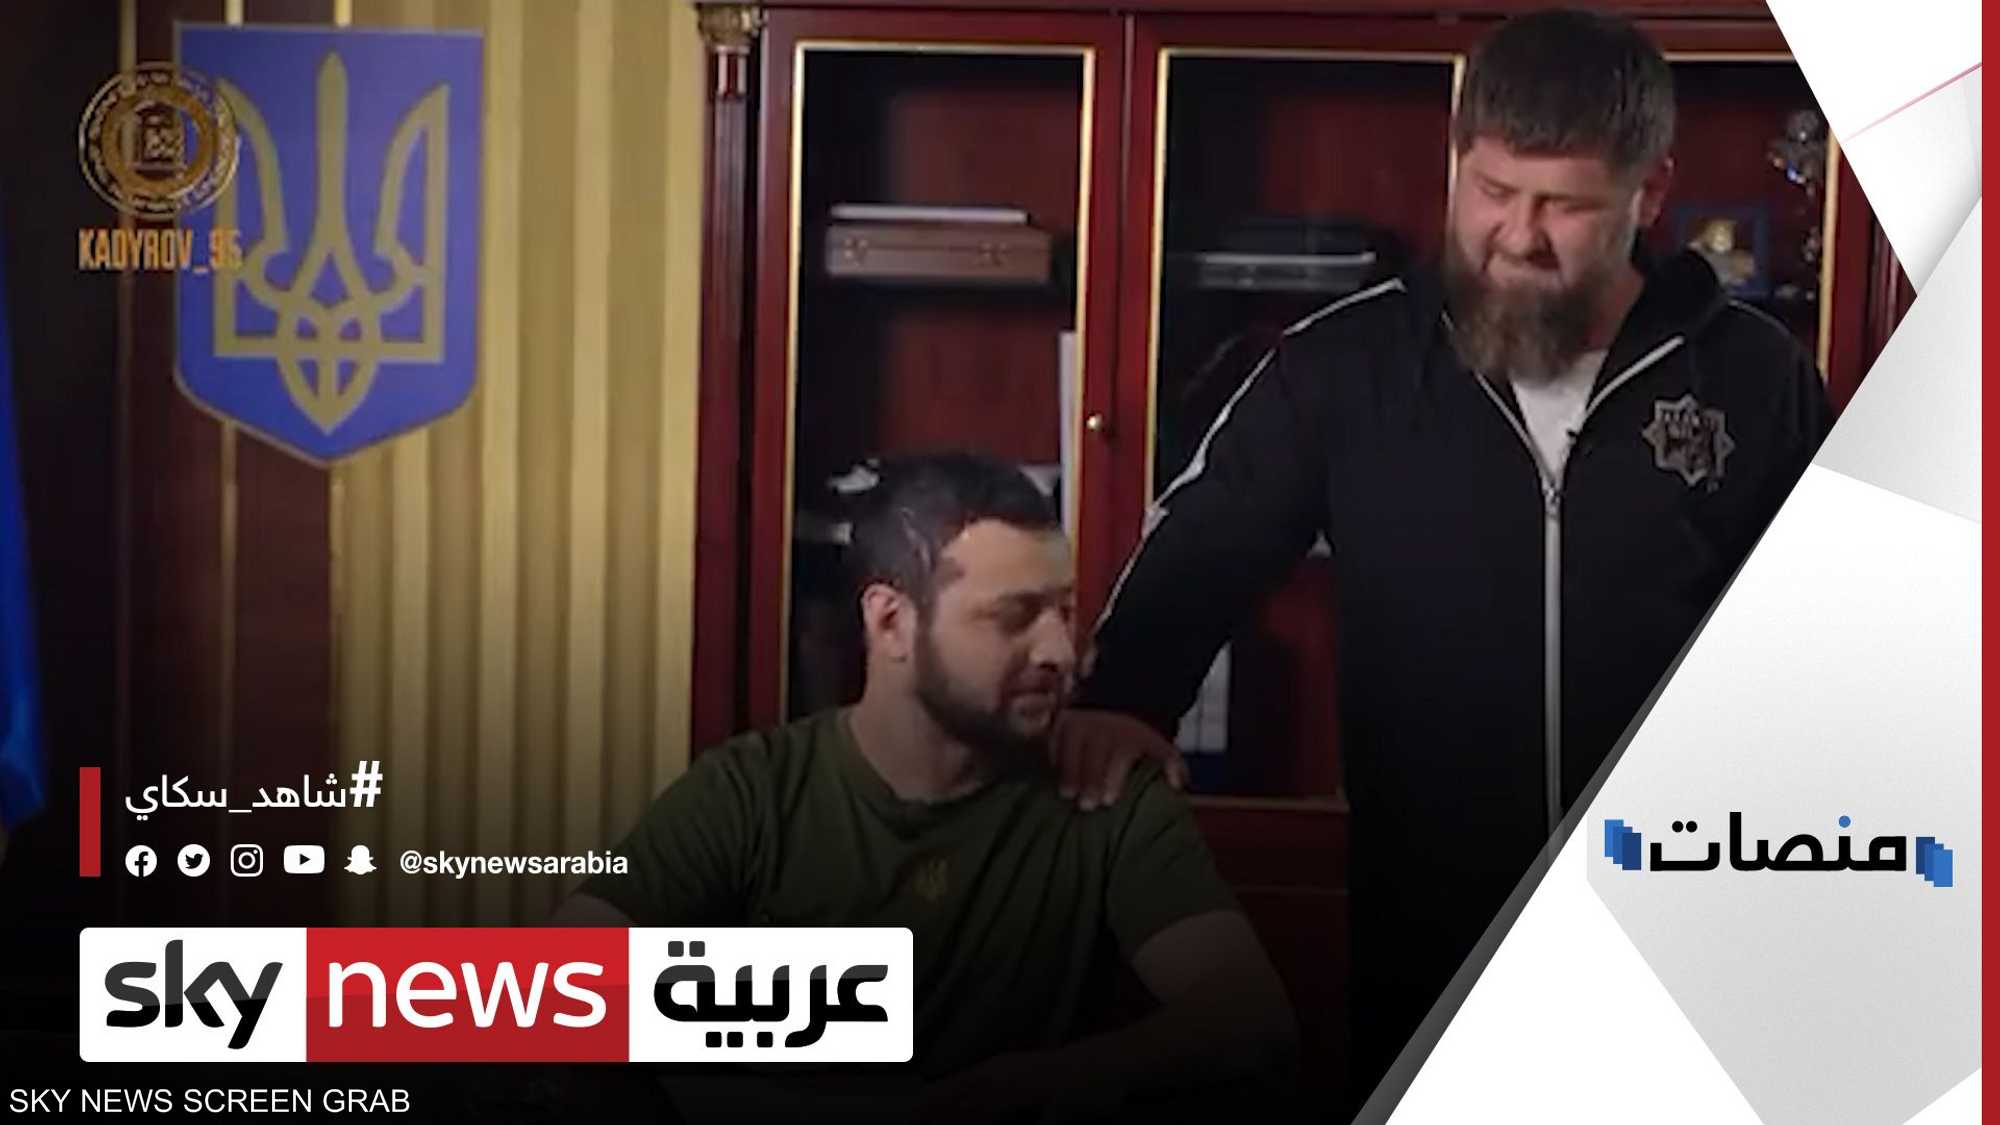 رئيس الشيشان يسخر من زيلينسكي بمشهد تمثيلي